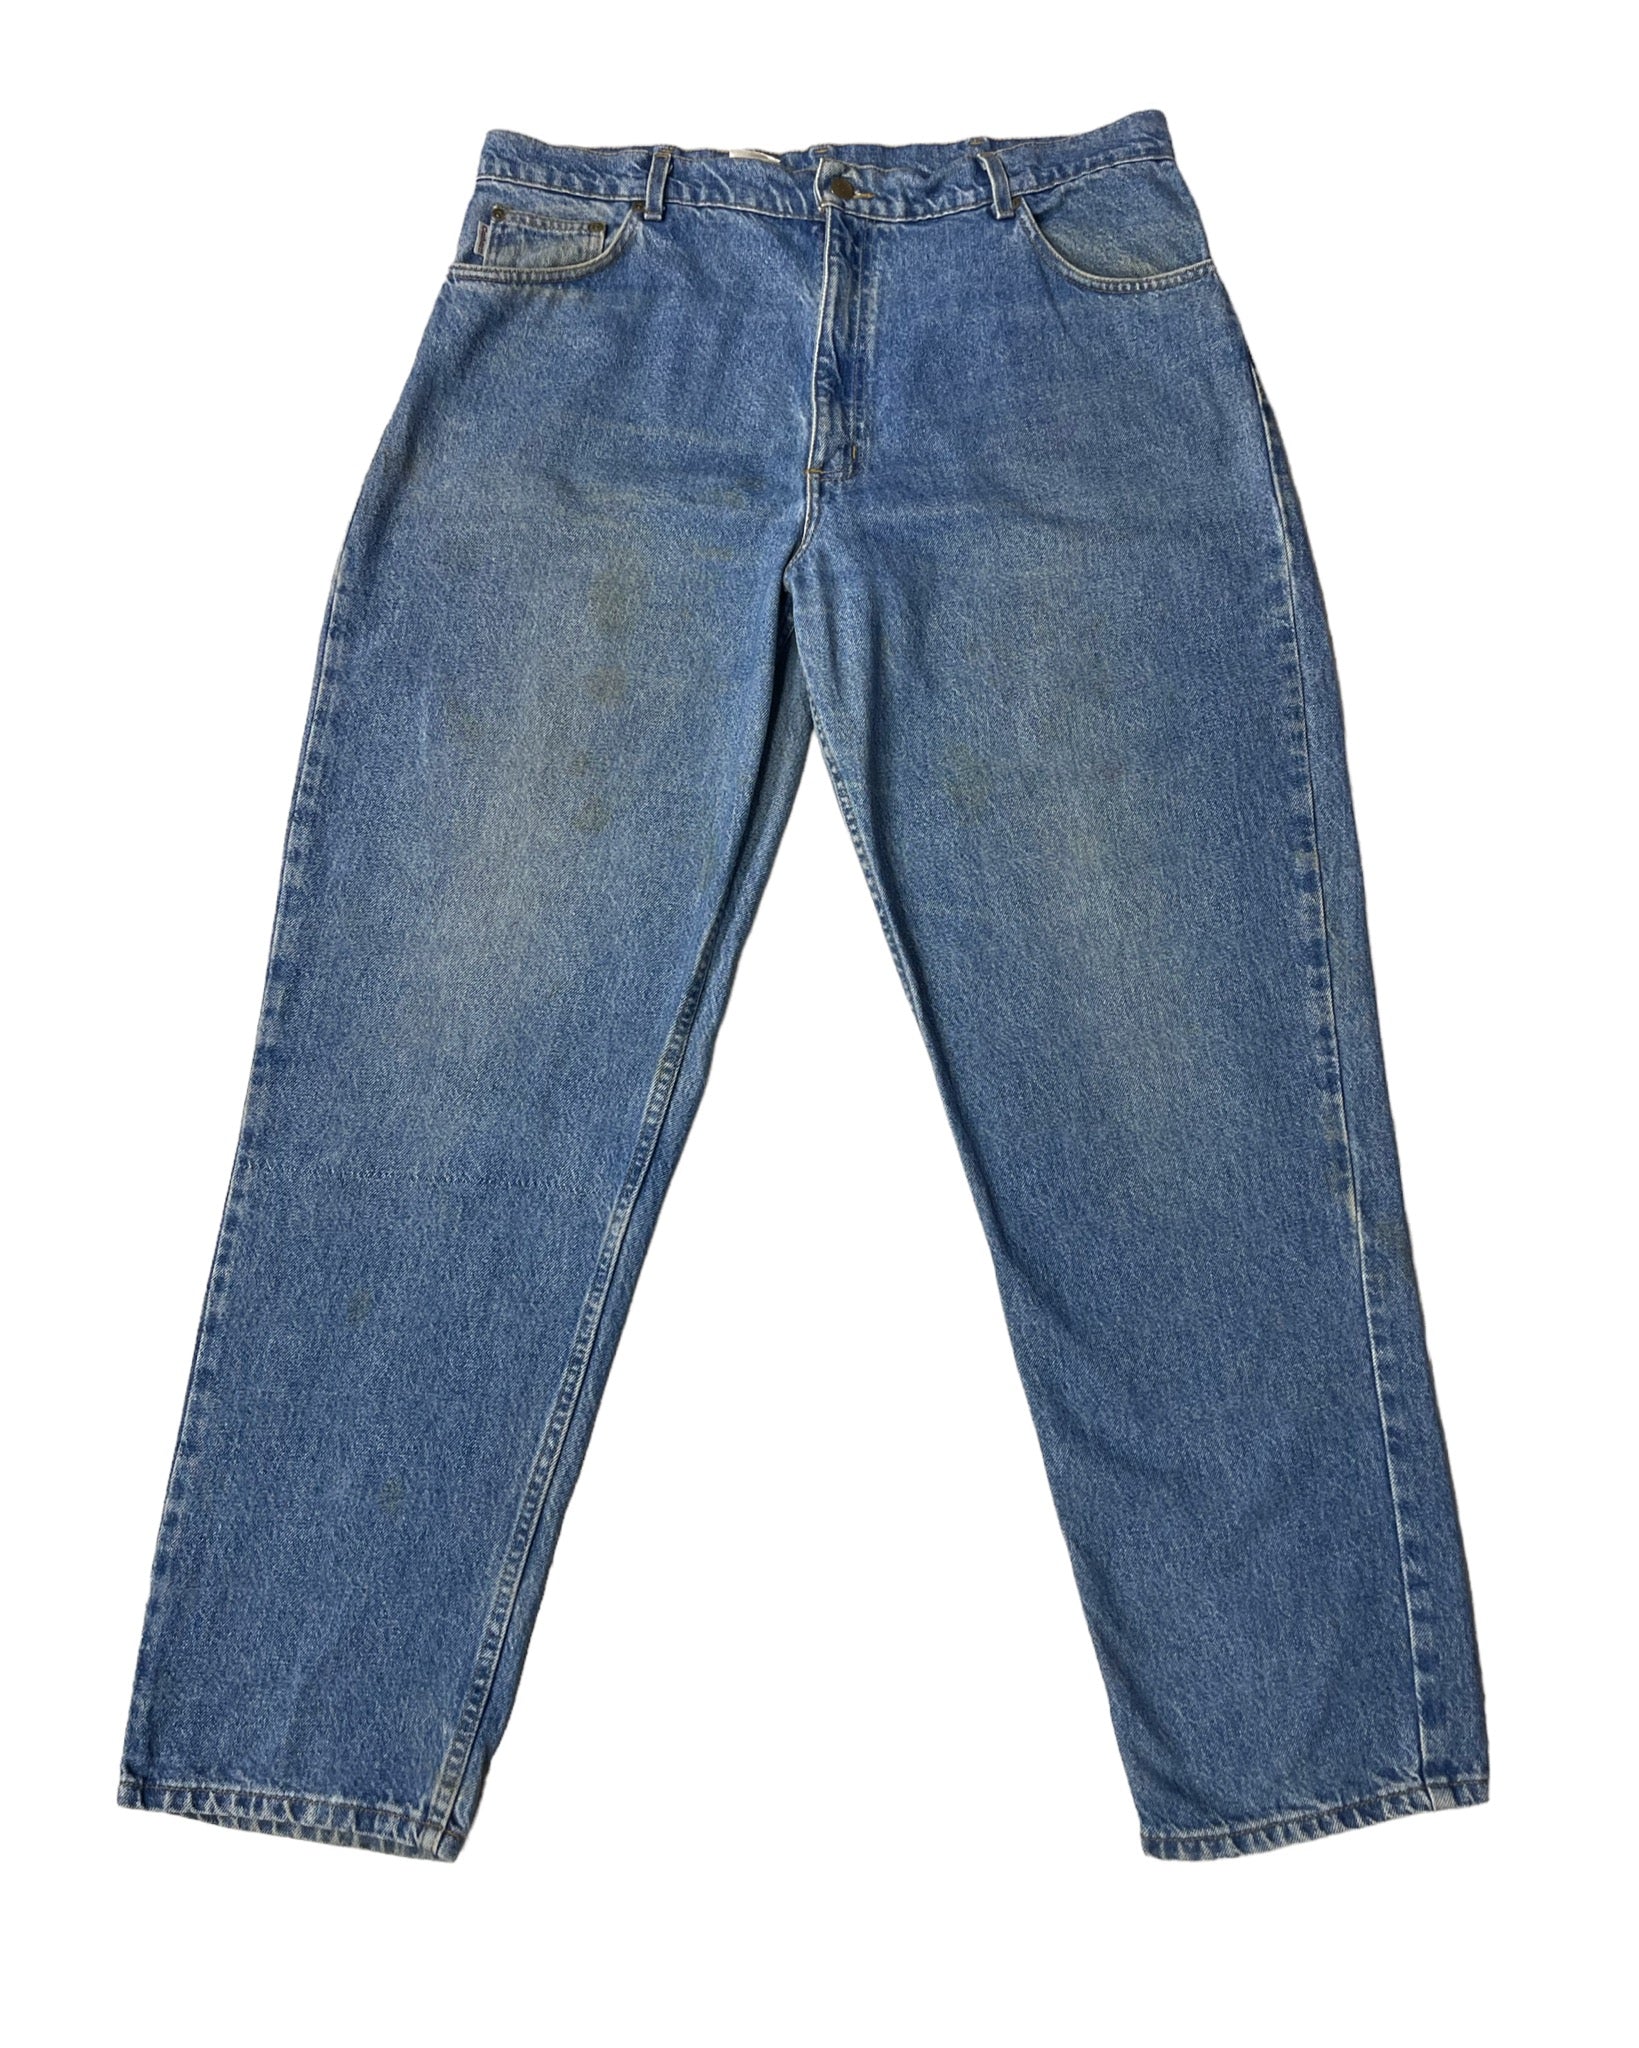  Jeans Carhartt Jean - B113DST - W40 L32 - PLOMOSTORE